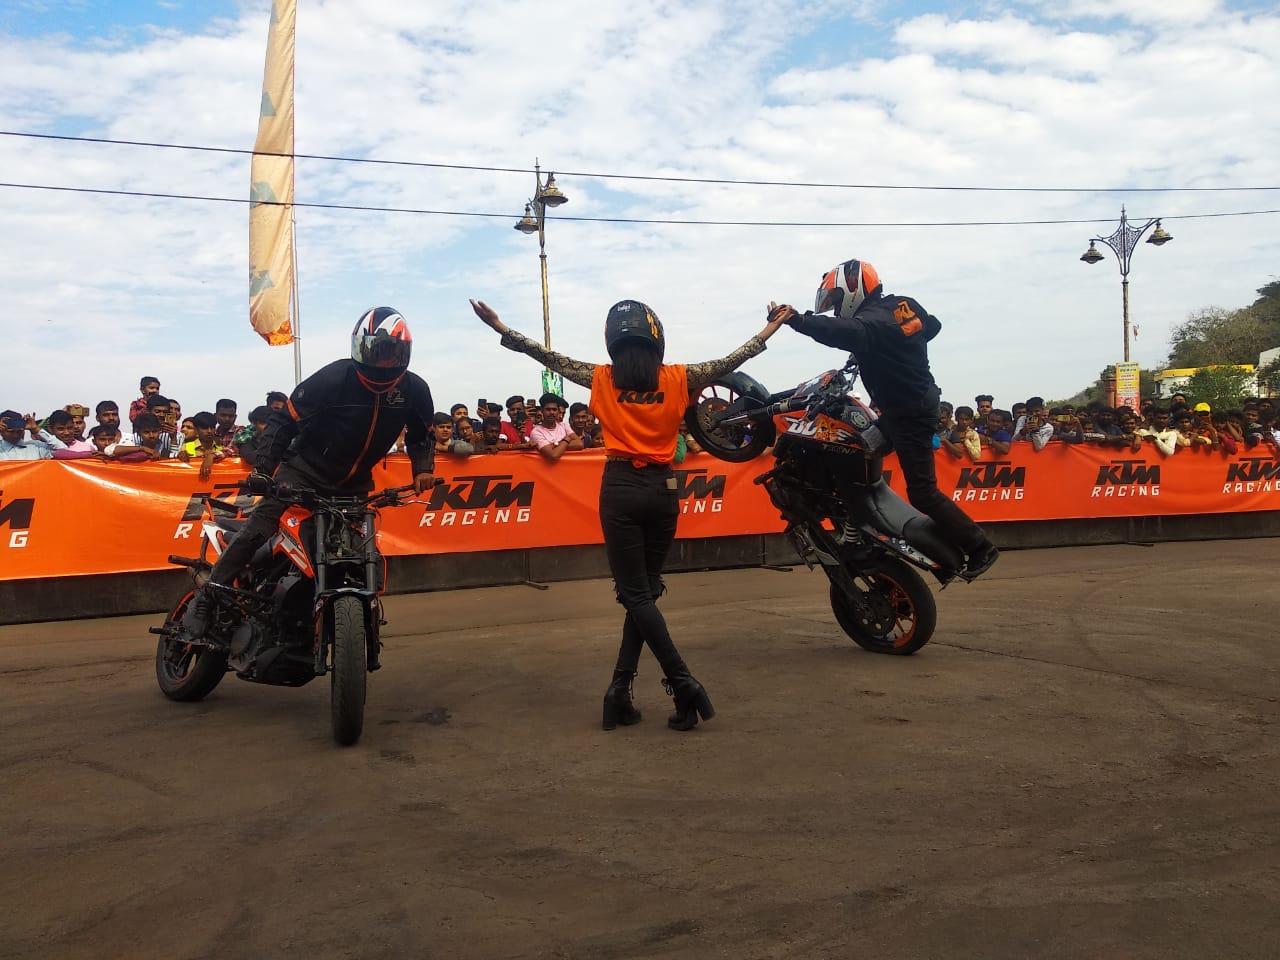 KTM organises a spectacular Stunt show in Dungarpur